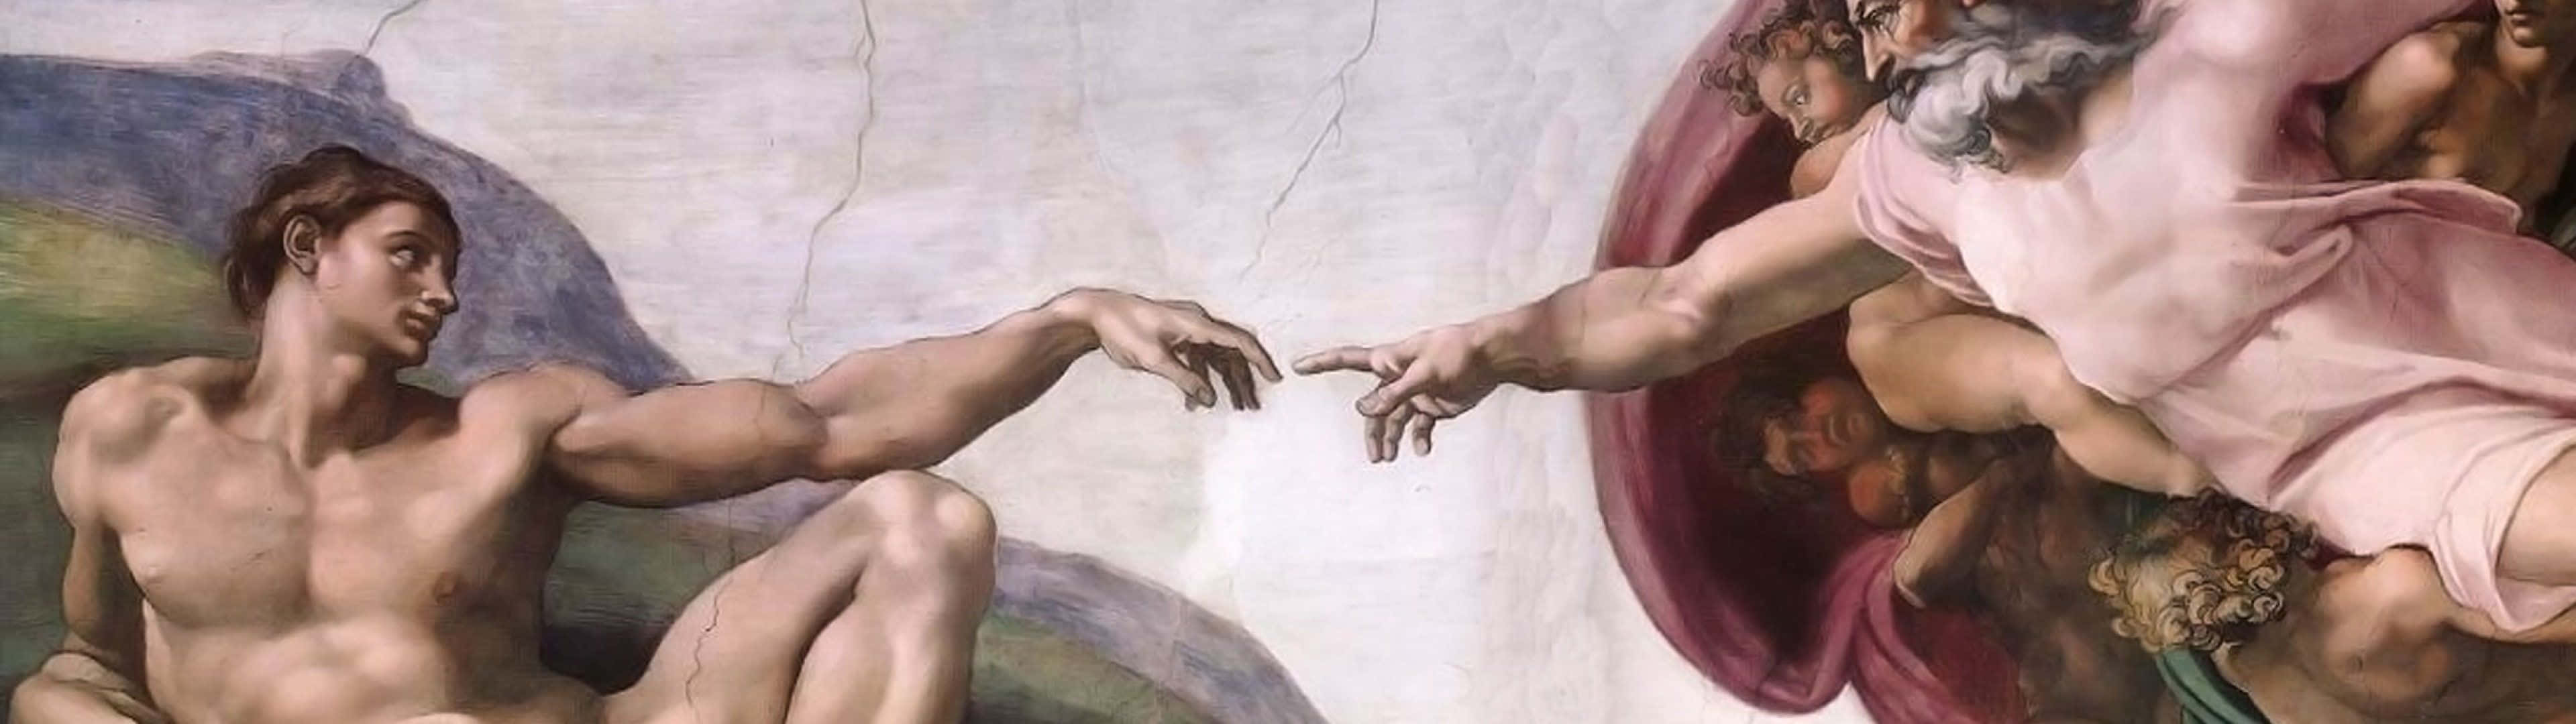 Michelangelosfresko Von Der Erschaffung Adams Wallpaper